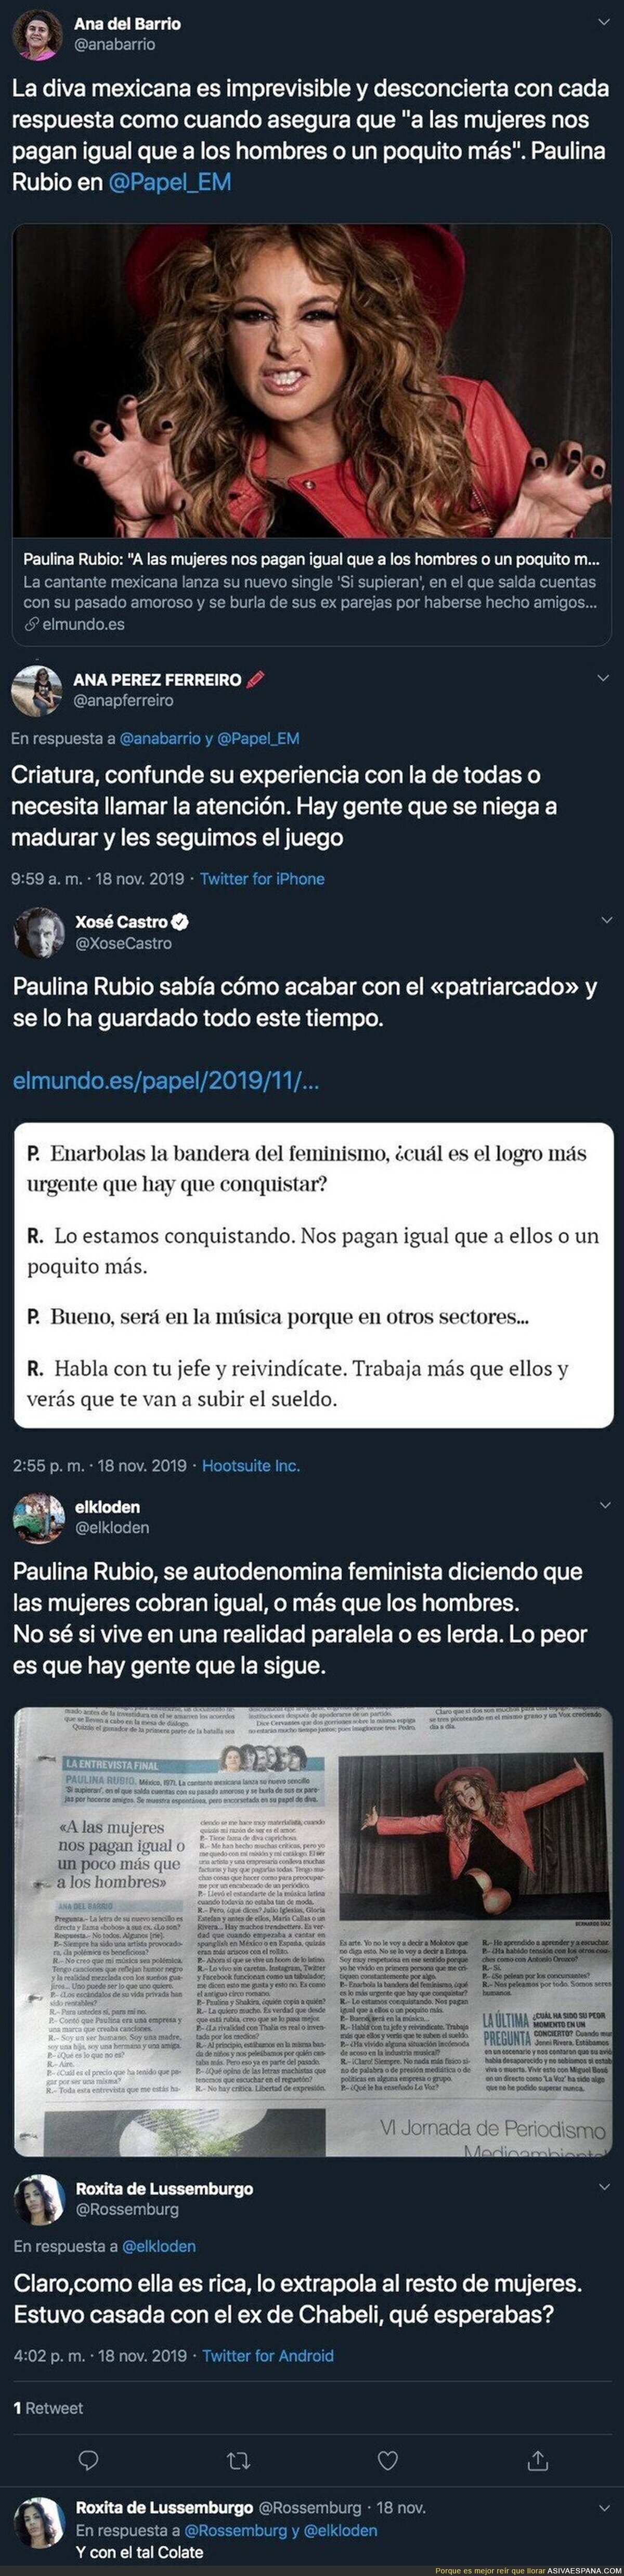 Las polémicas declaraciones de Paulina Rubio sobre el salario de las mujeres que está dando mucho que hablar